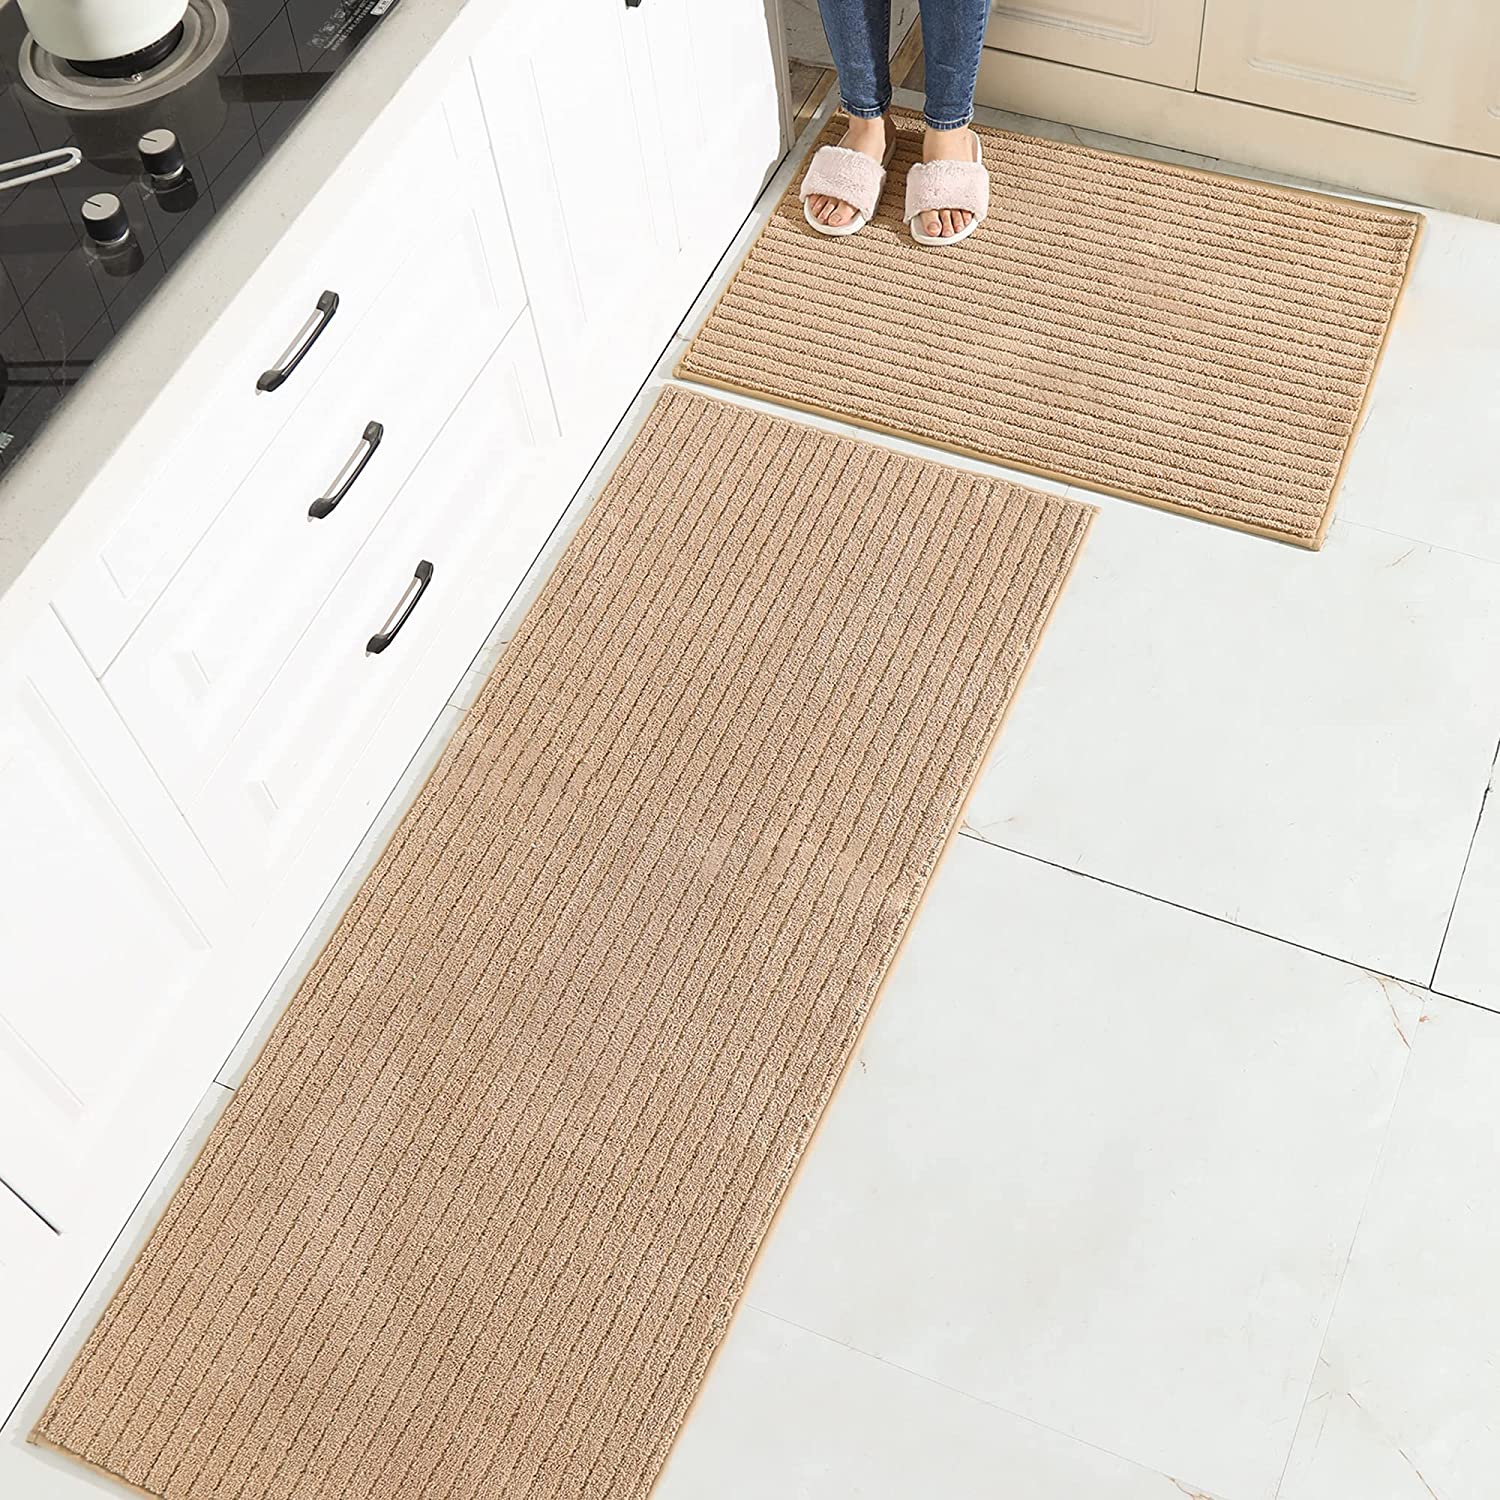 Villsure Kitchen Rugs and Mats, Non Skid Kitchen Runner Rug Absorbent  Resist Dirt Kitchen Floor Mat Comfort Standing Mat Made of 100%  Polypropylene